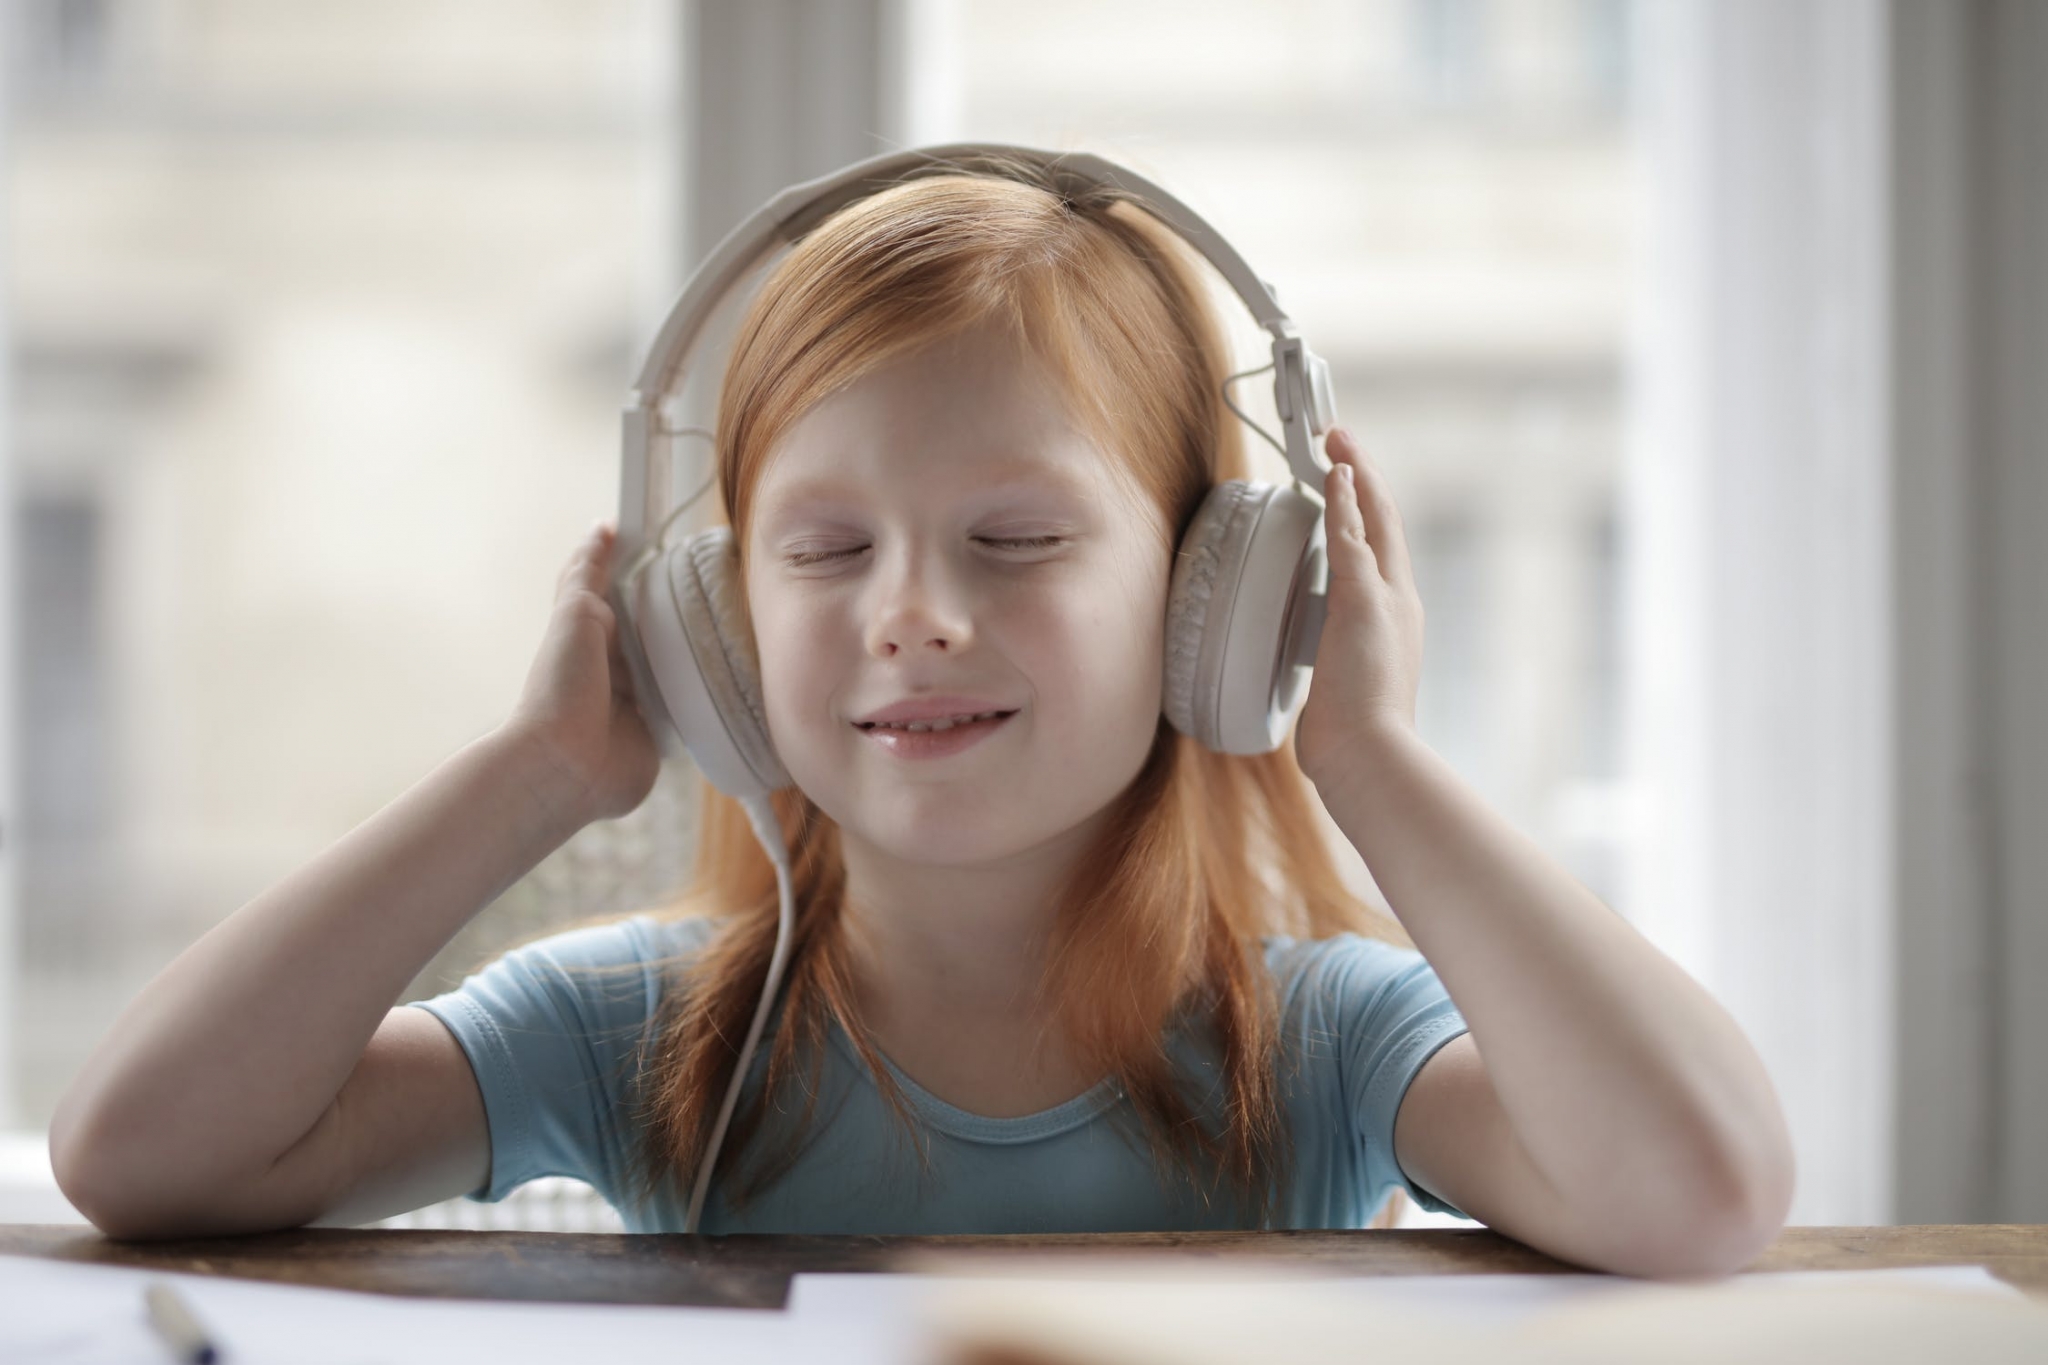 Young girl using headphones